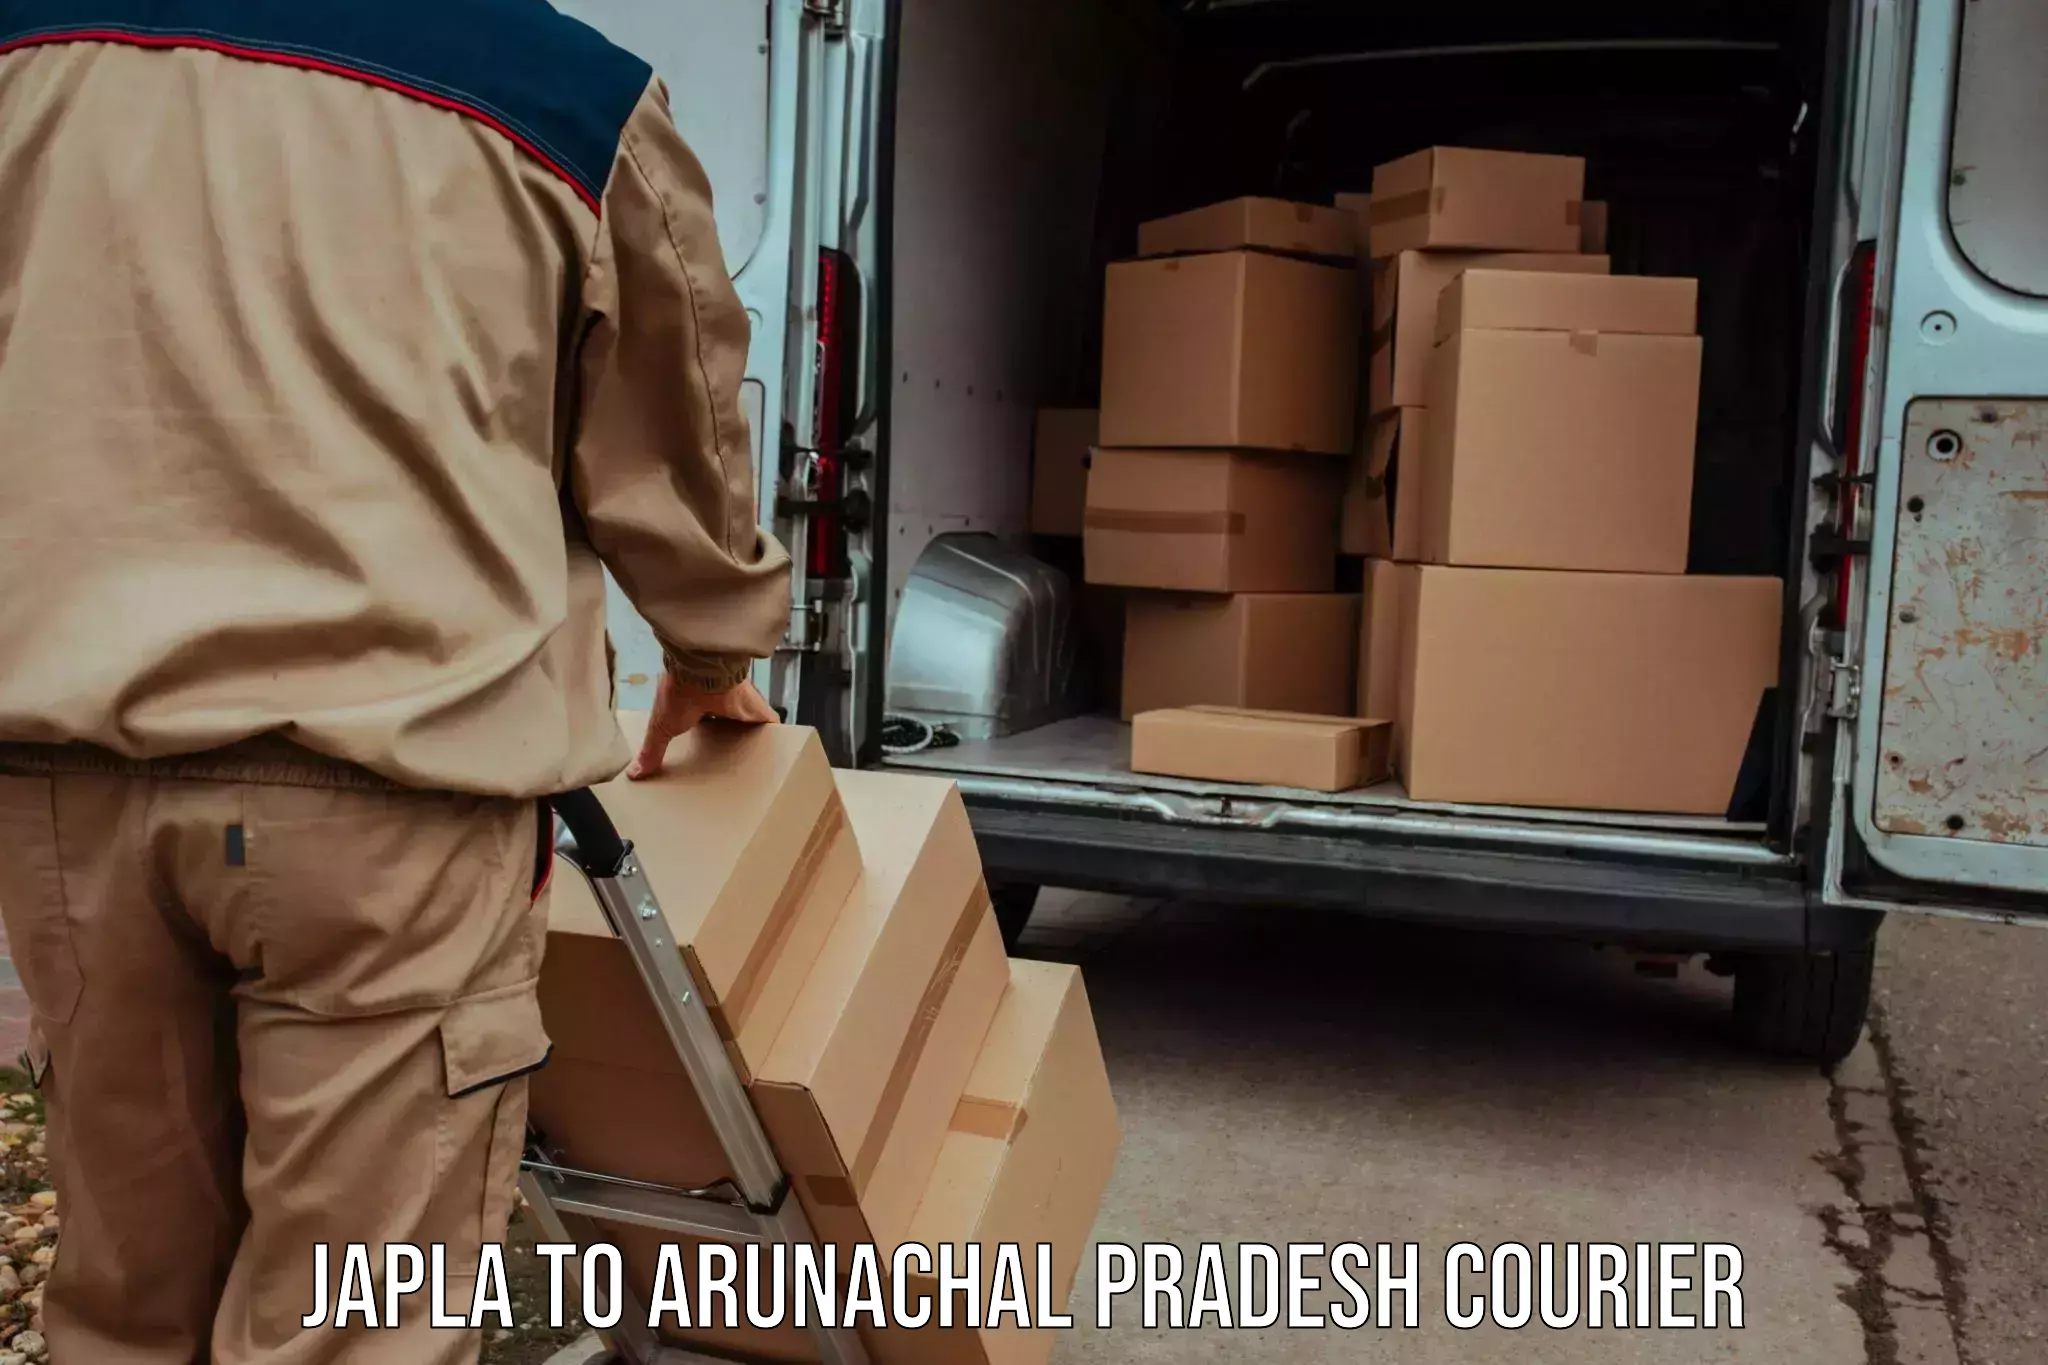 Courier service efficiency Japla to Arunachal Pradesh